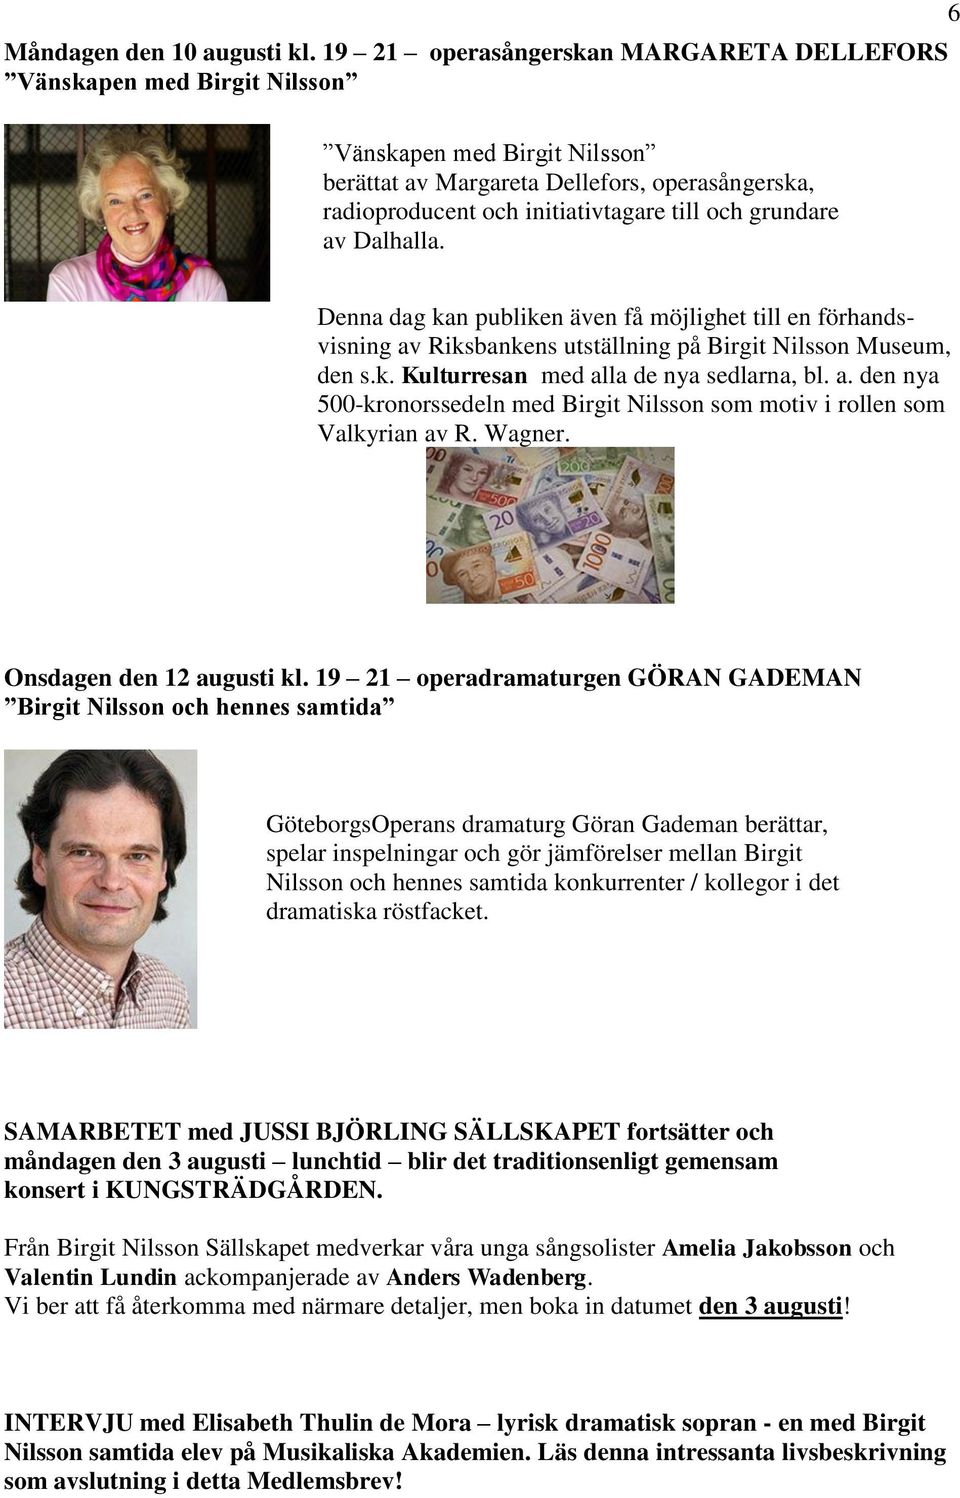 grundare av Dalhalla. Denna dag kan publiken även få möjlighet till en förhandsvisning av Riksbankens utställning på Birgit Nilsson Museum, den s.k. Kulturresan med alla de nya sedlarna, bl. a. den nya 500-kronorssedeln med Birgit Nilsson som motiv i rollen som Valkyrian av R.